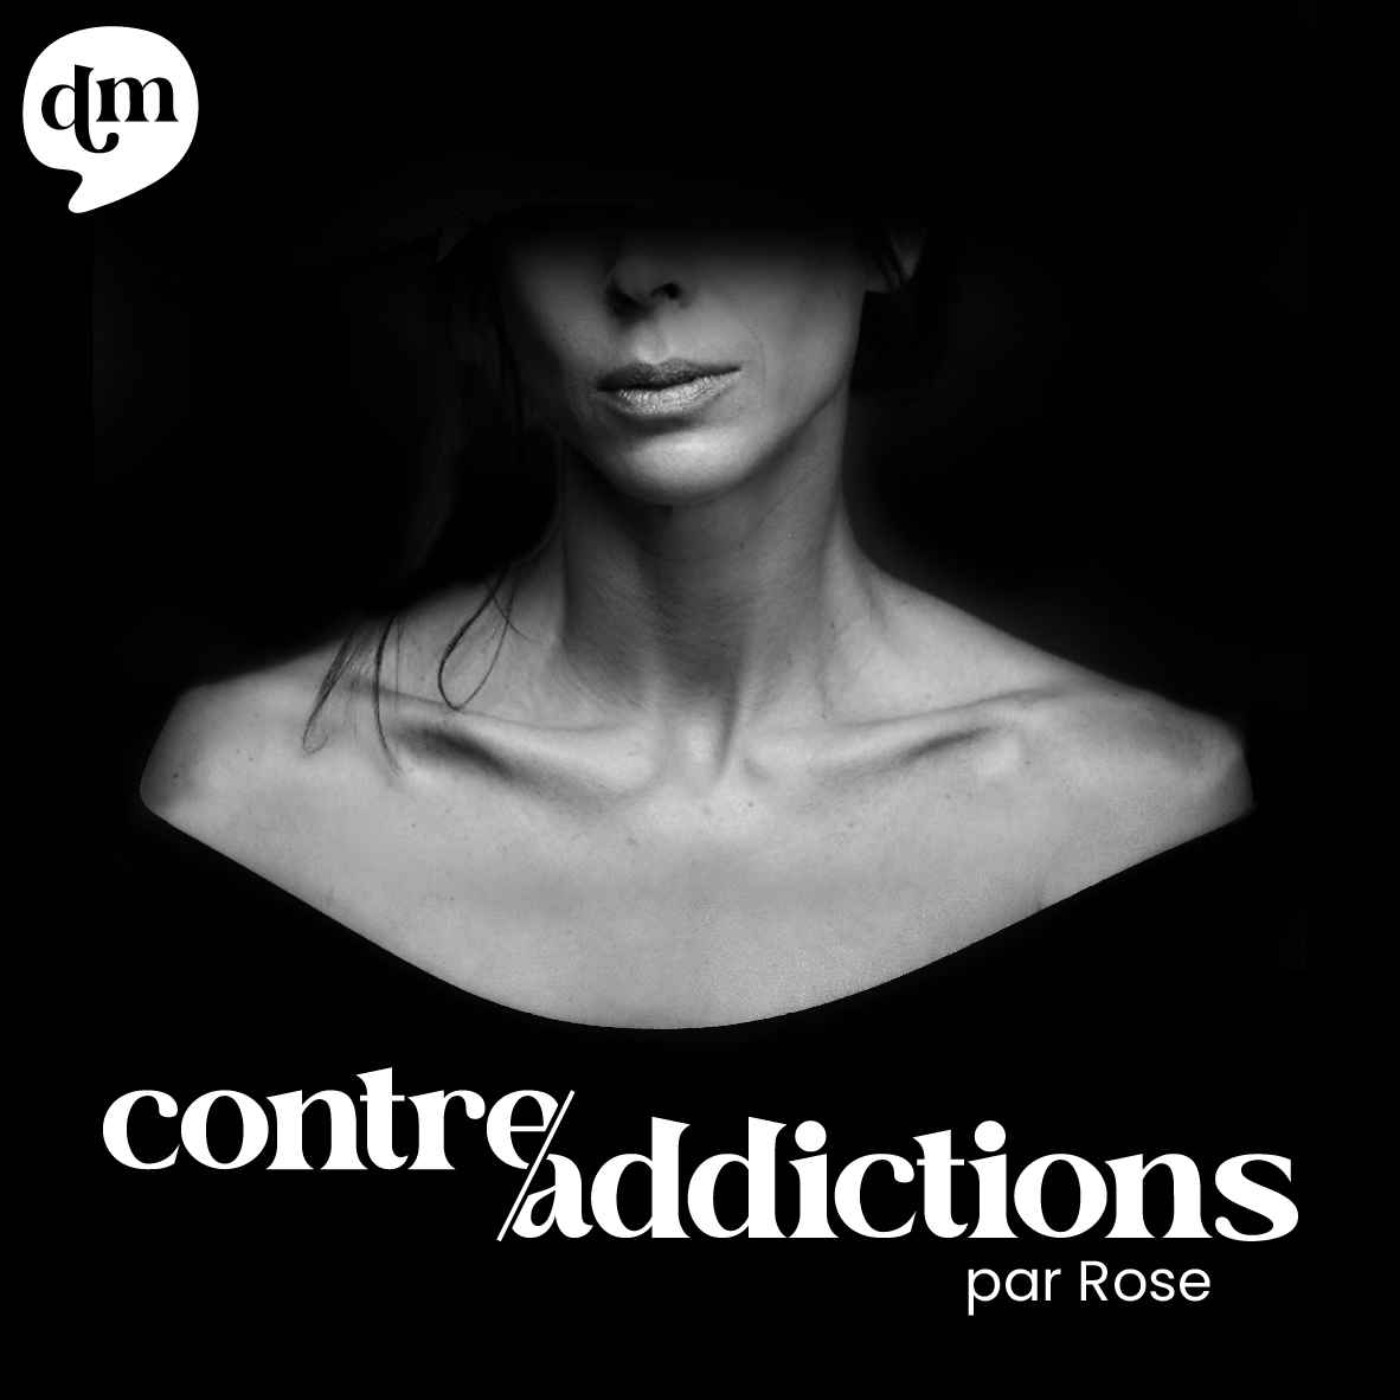 Découvrez "Contre-addictions" par Rose, le podcast pour ceux qui se donnent du mal pour aller bien - Production Double Monde